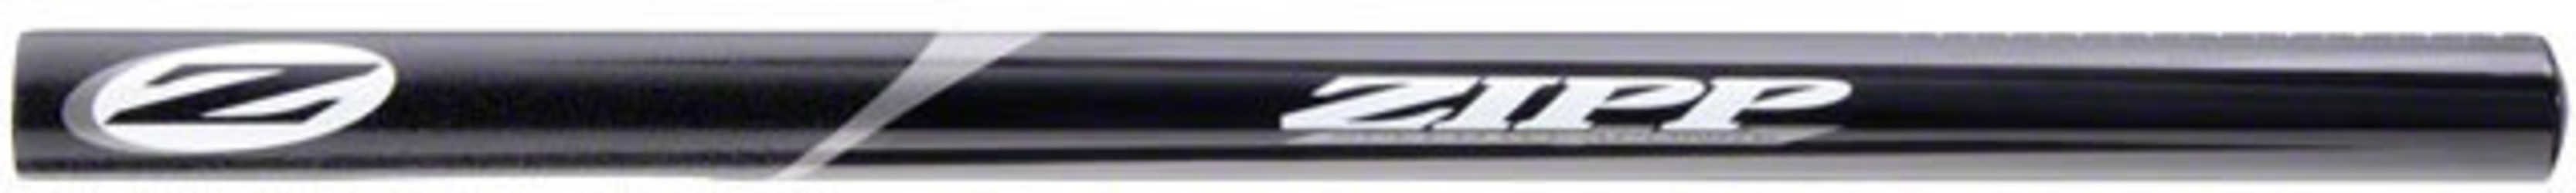 Tempopinnar Zipp Vuka Kolfiber Straight 22.2 mm svart från Zipp